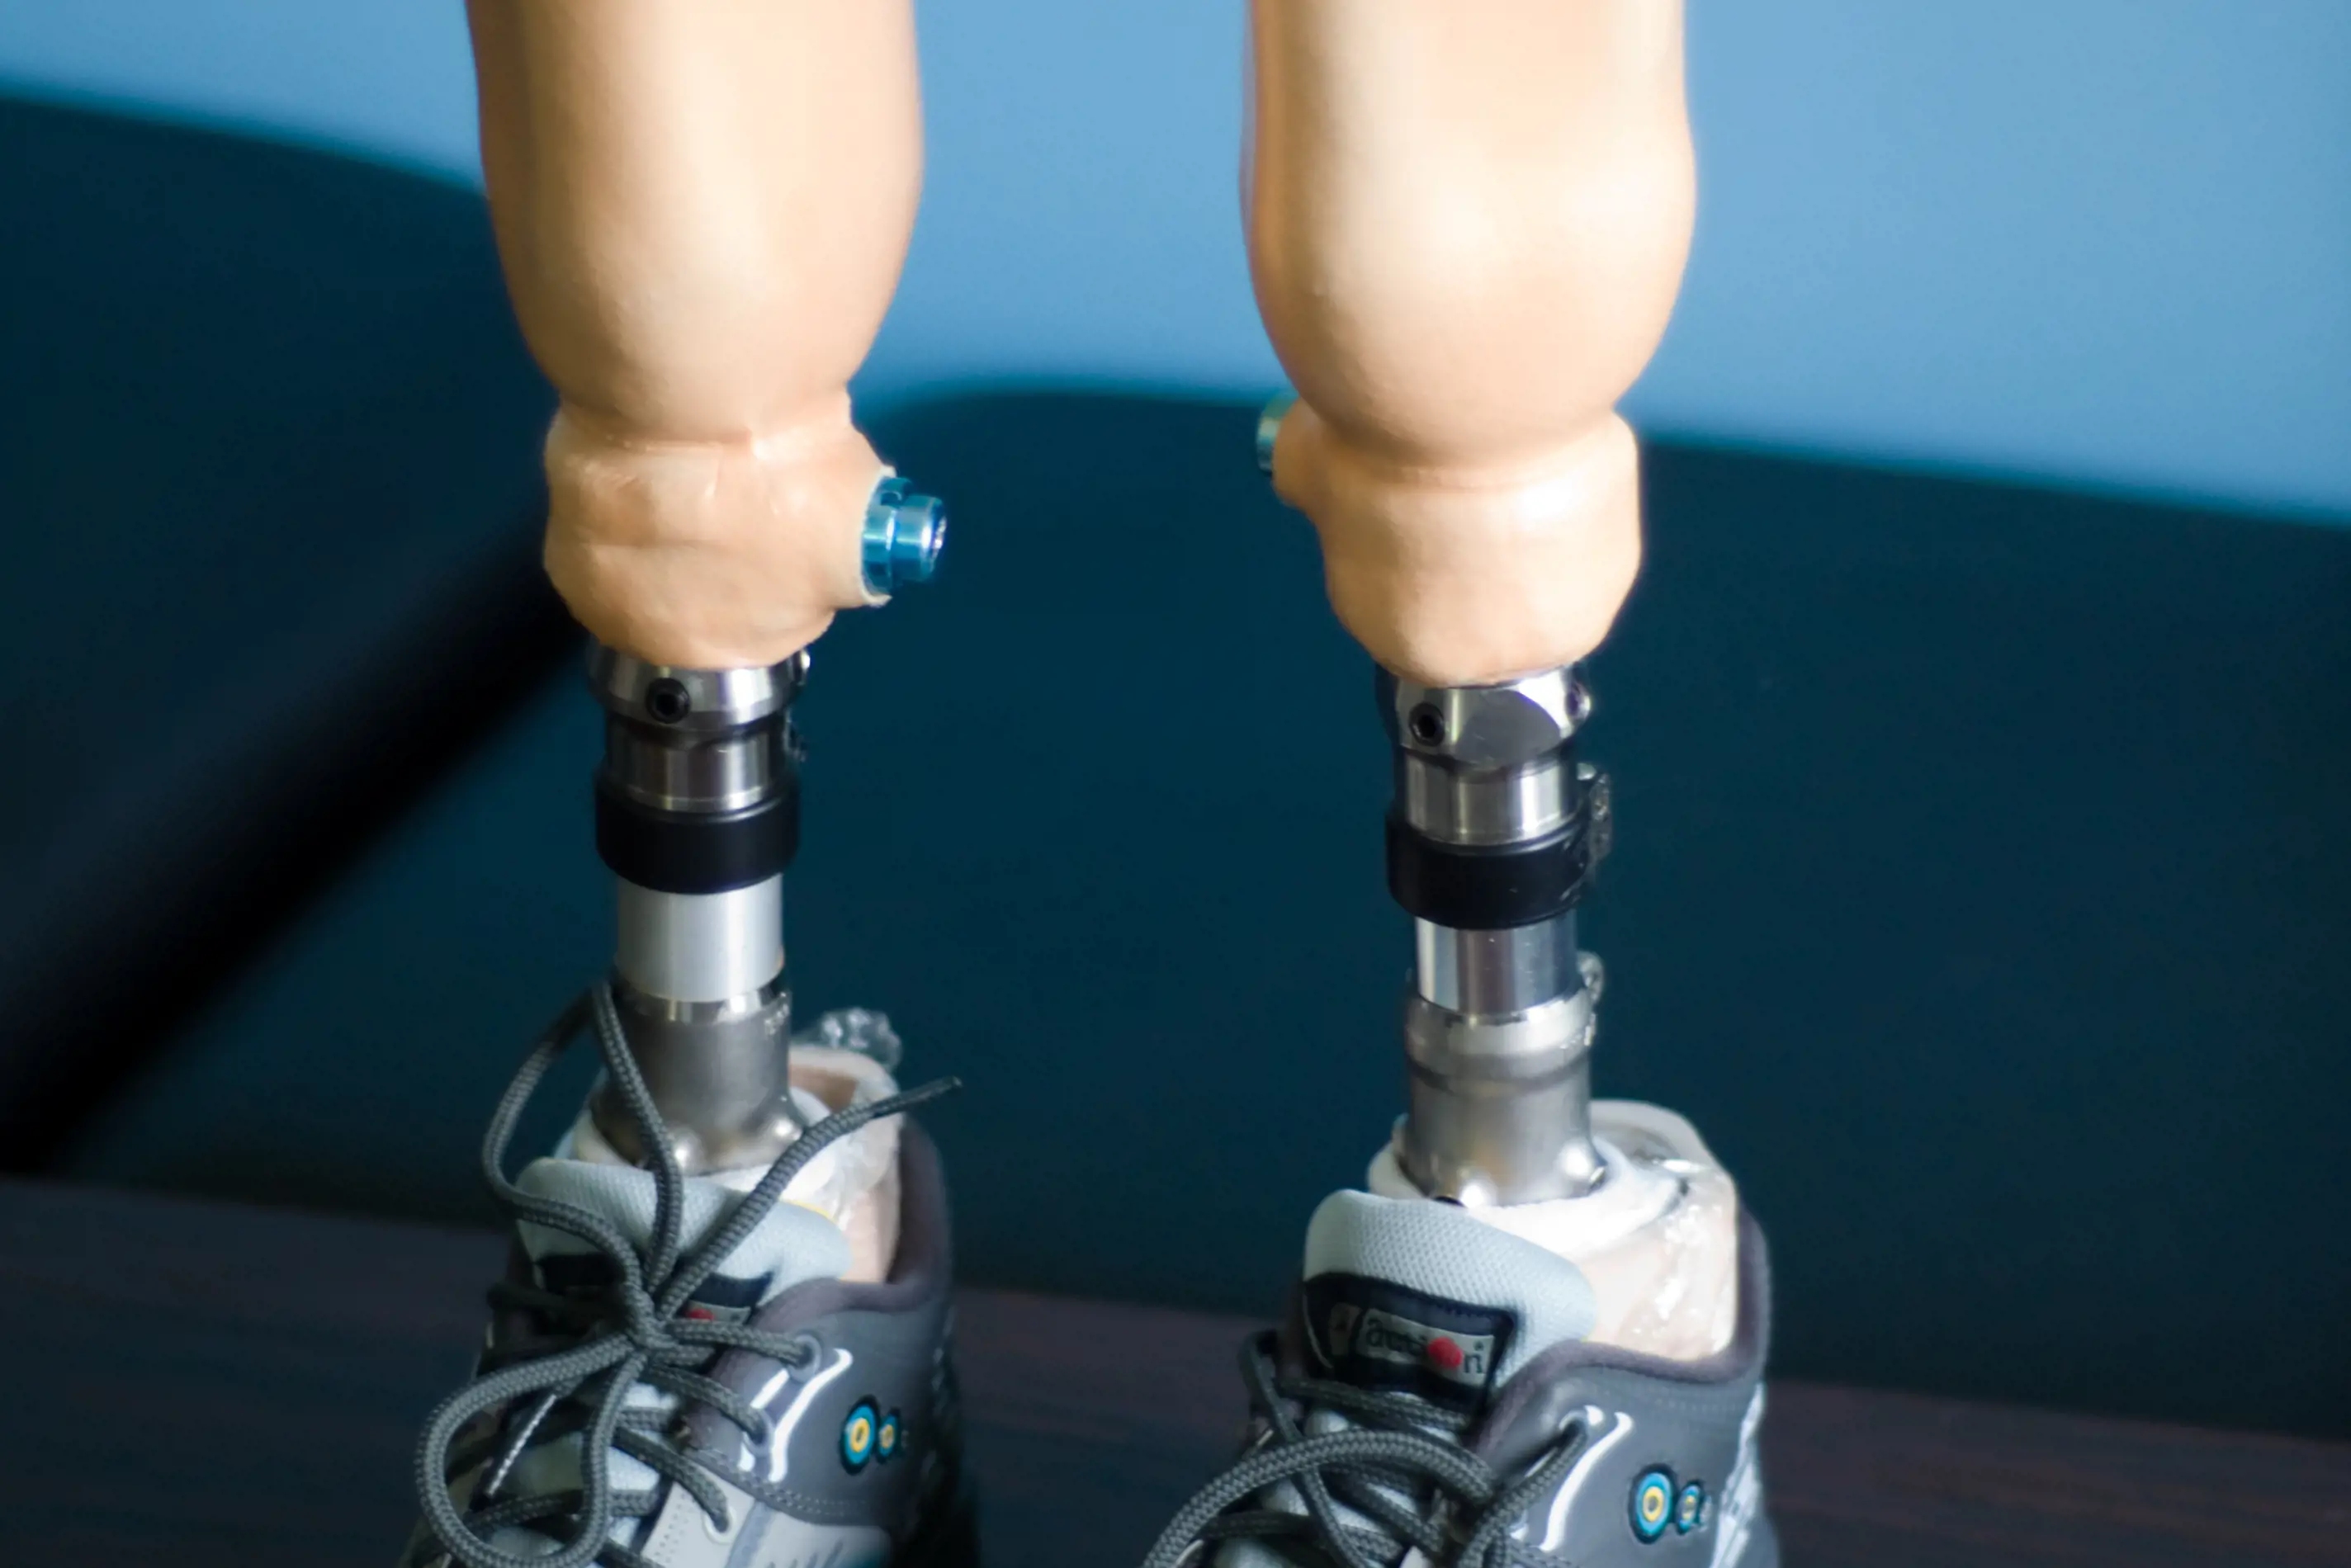 Bildet viser to benproteser